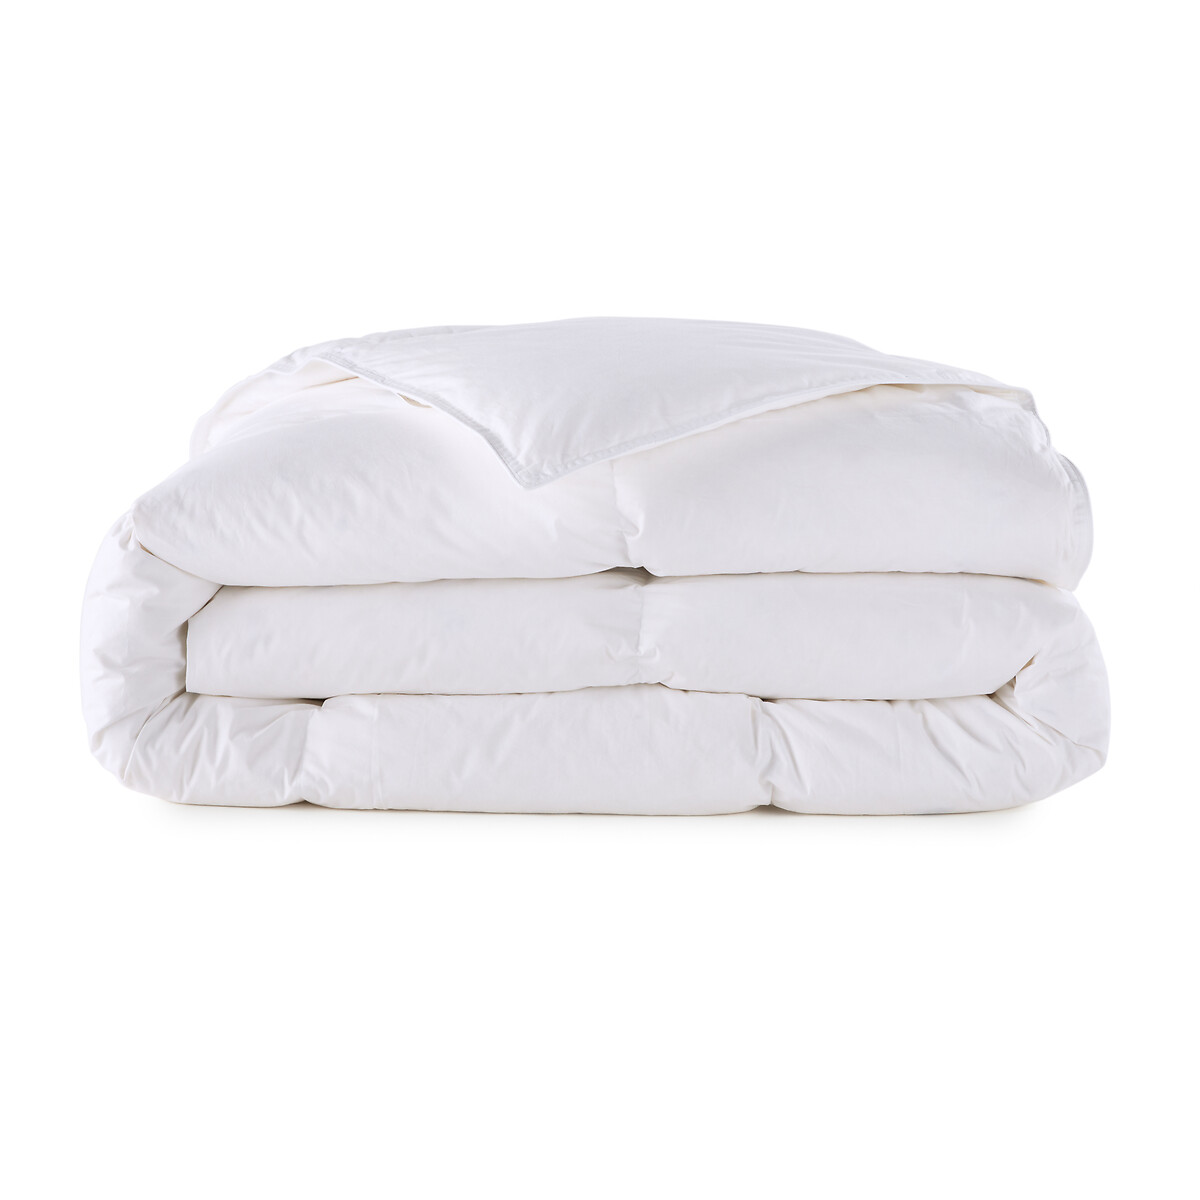 Одеяло La Redoute Натуральное для комфортного сна Прохладное  пуха  перьев 260 x 240 см белый, размер 260 x 240 см - фото 2